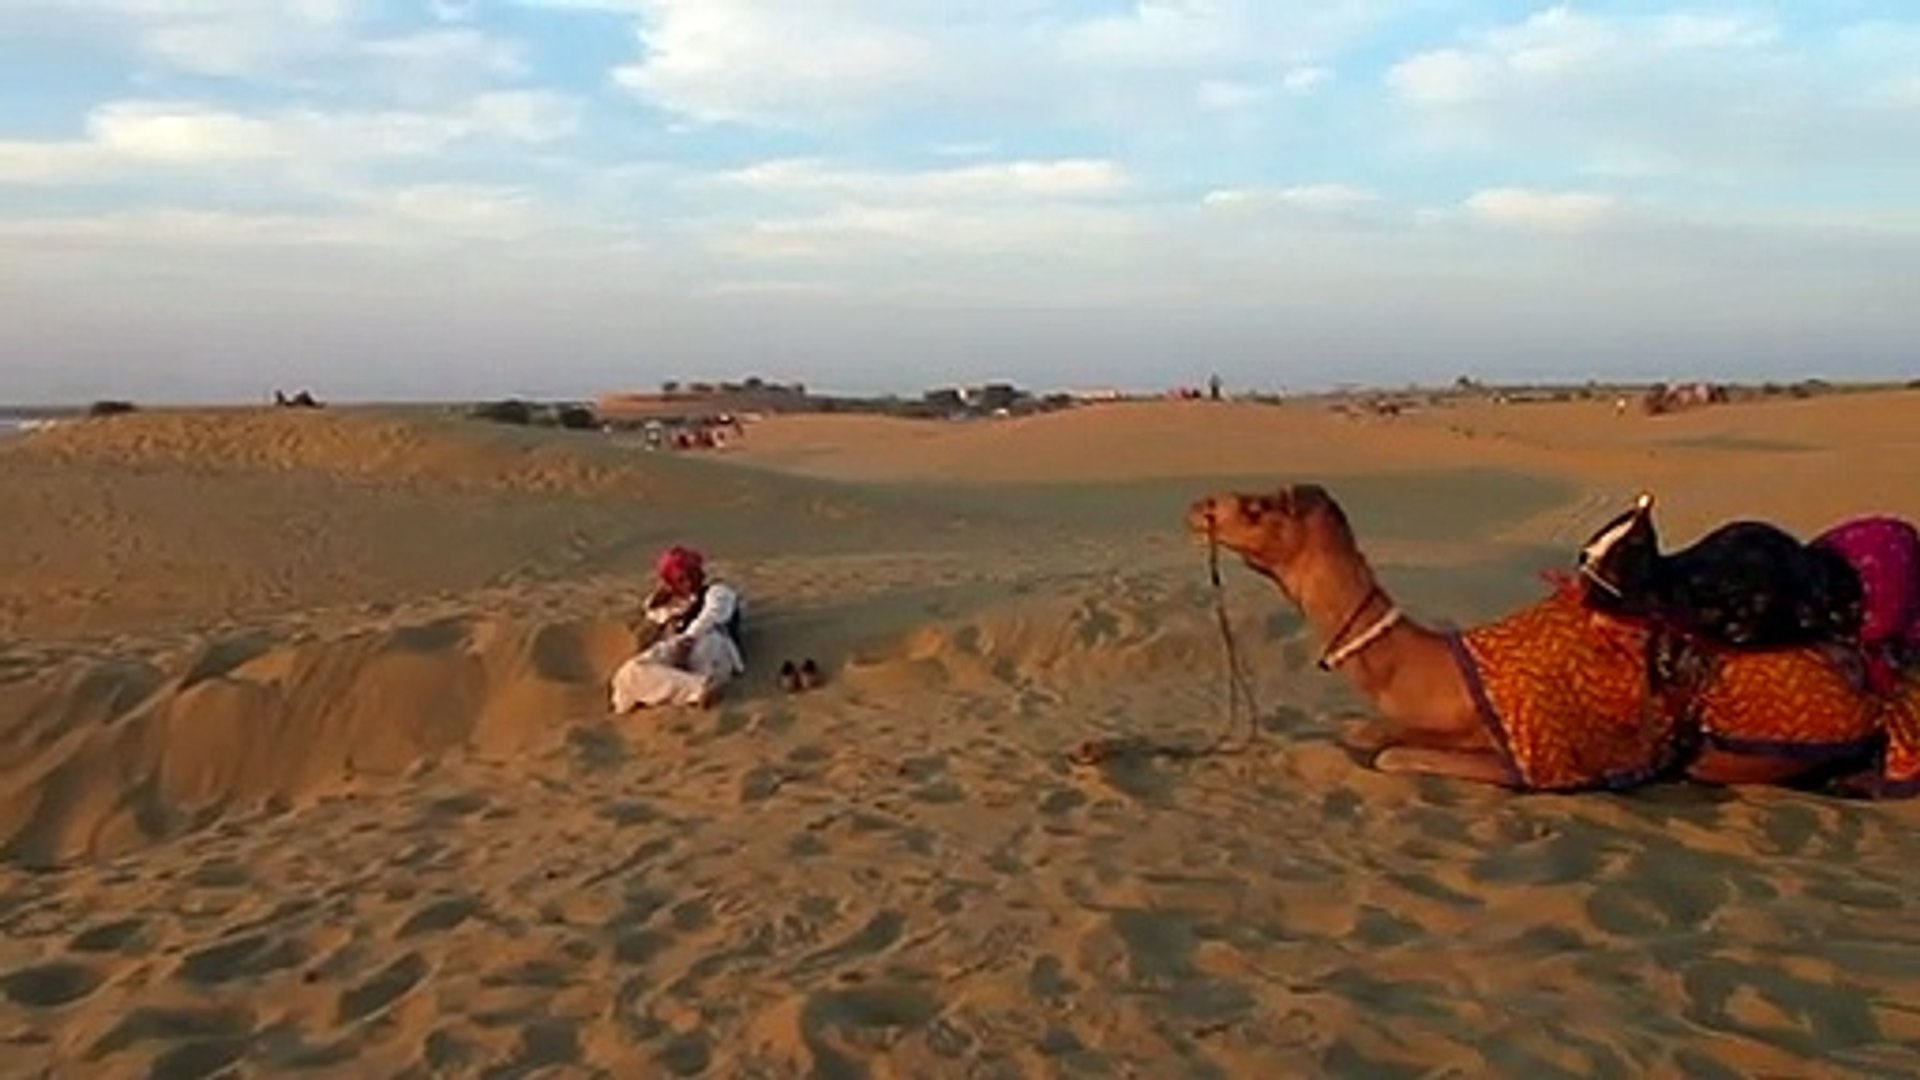 Jaisalmer Camel Ride And Sunset In The Thar Desert Tour En Chameau Et Coucher De Soleil Kamelritt Und Sonnenuntergang Uin078718